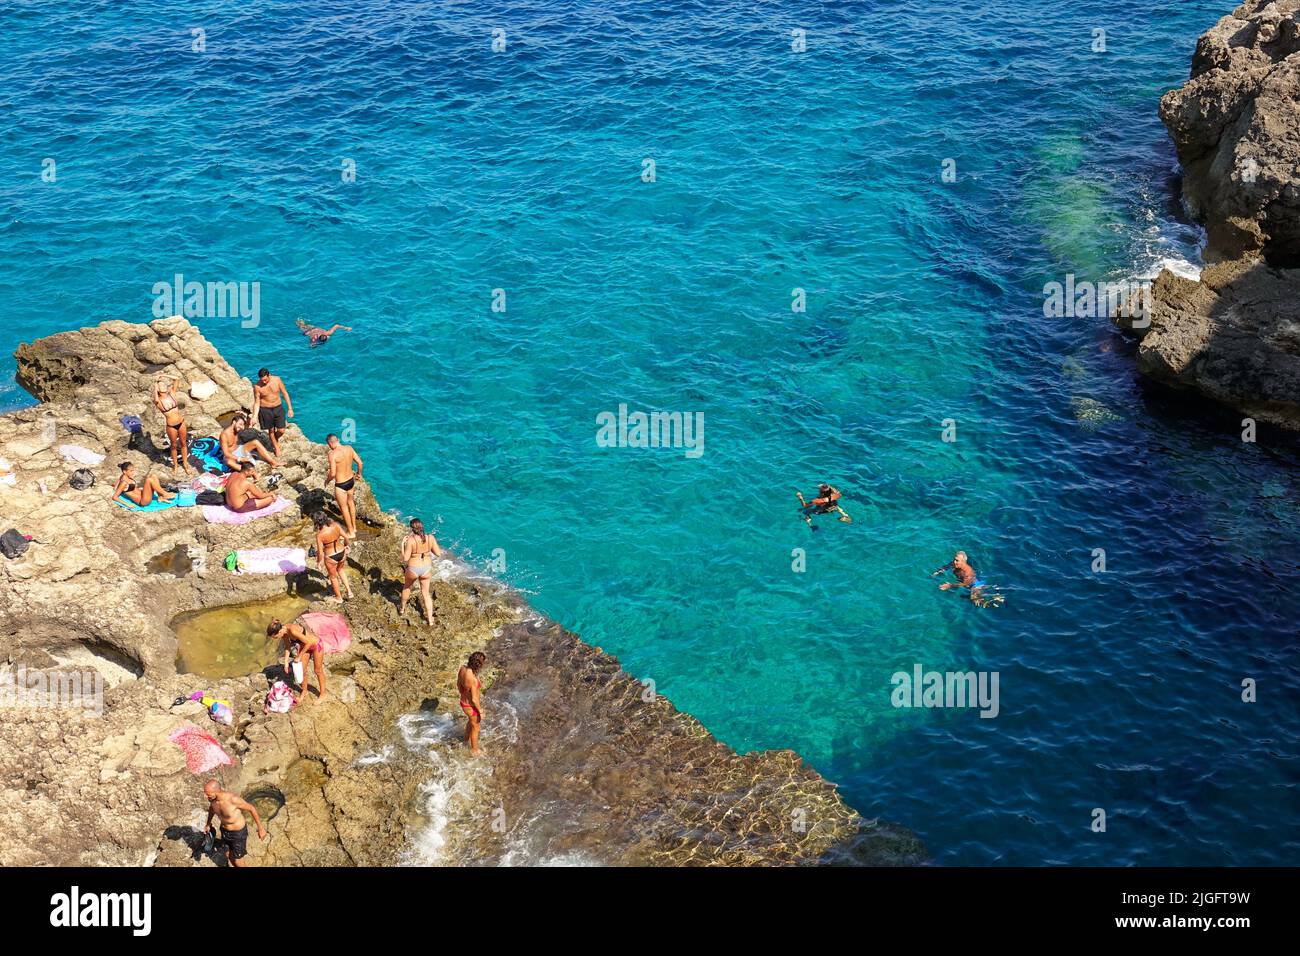 Vista de la costa de la isla de Lampedusa paraíso marino para yates y nadadores. Lampedusa, Italia - Agosto de 2019 Foto de stock